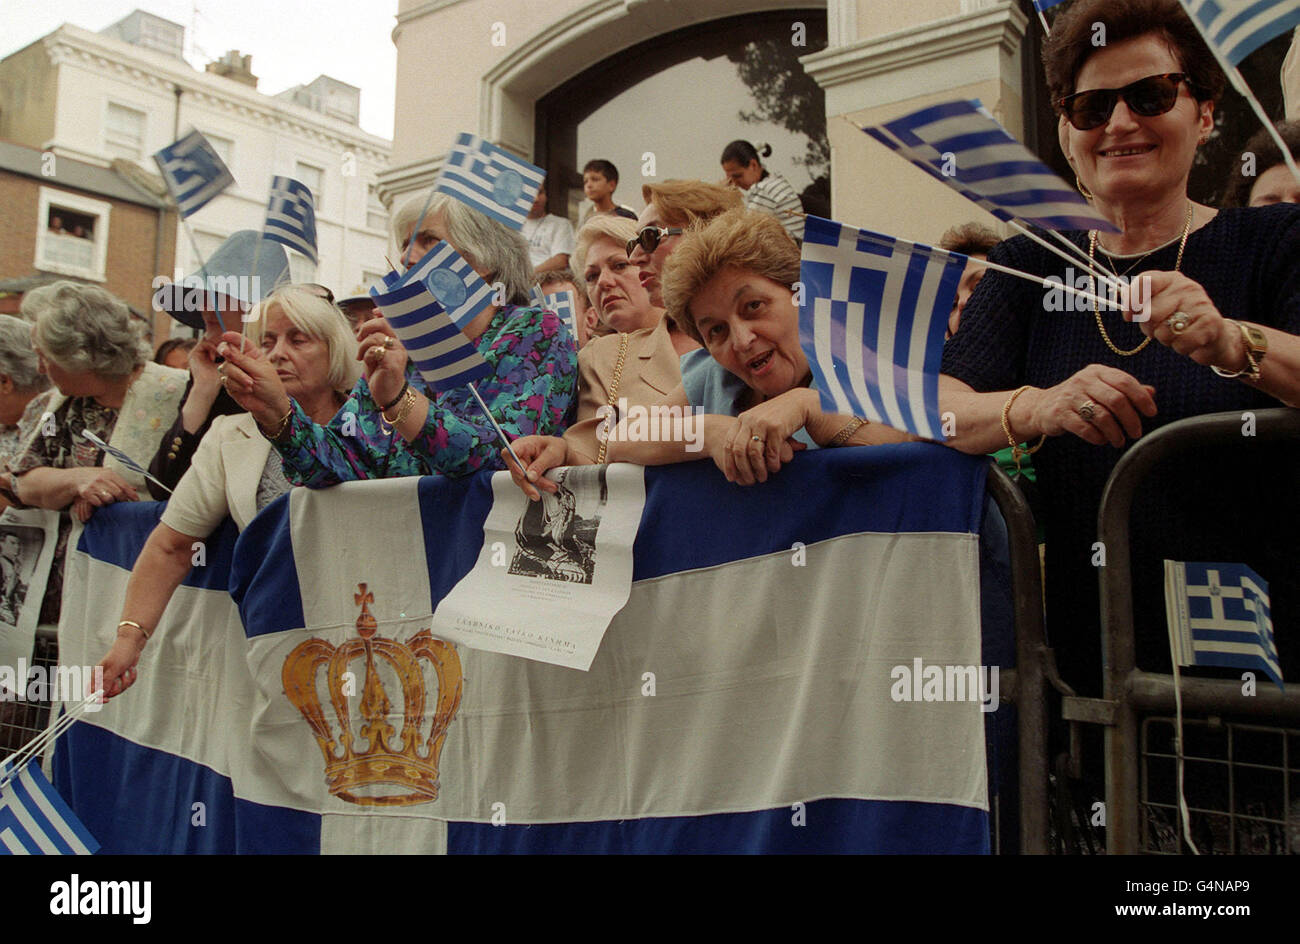 Les partisans de la famille royale grecque brandissaient des drapeaux alors qu'ils se rassemblaient devant la cathédrale orthodoxe grecque de Sainte-Sophie à Bayswater, dans l'ouest de Londres, où se tenait le service de mariage de la princesse Alexia de Grèce et de Carlos Morales Quintana d'Espagne. Banque D'Images